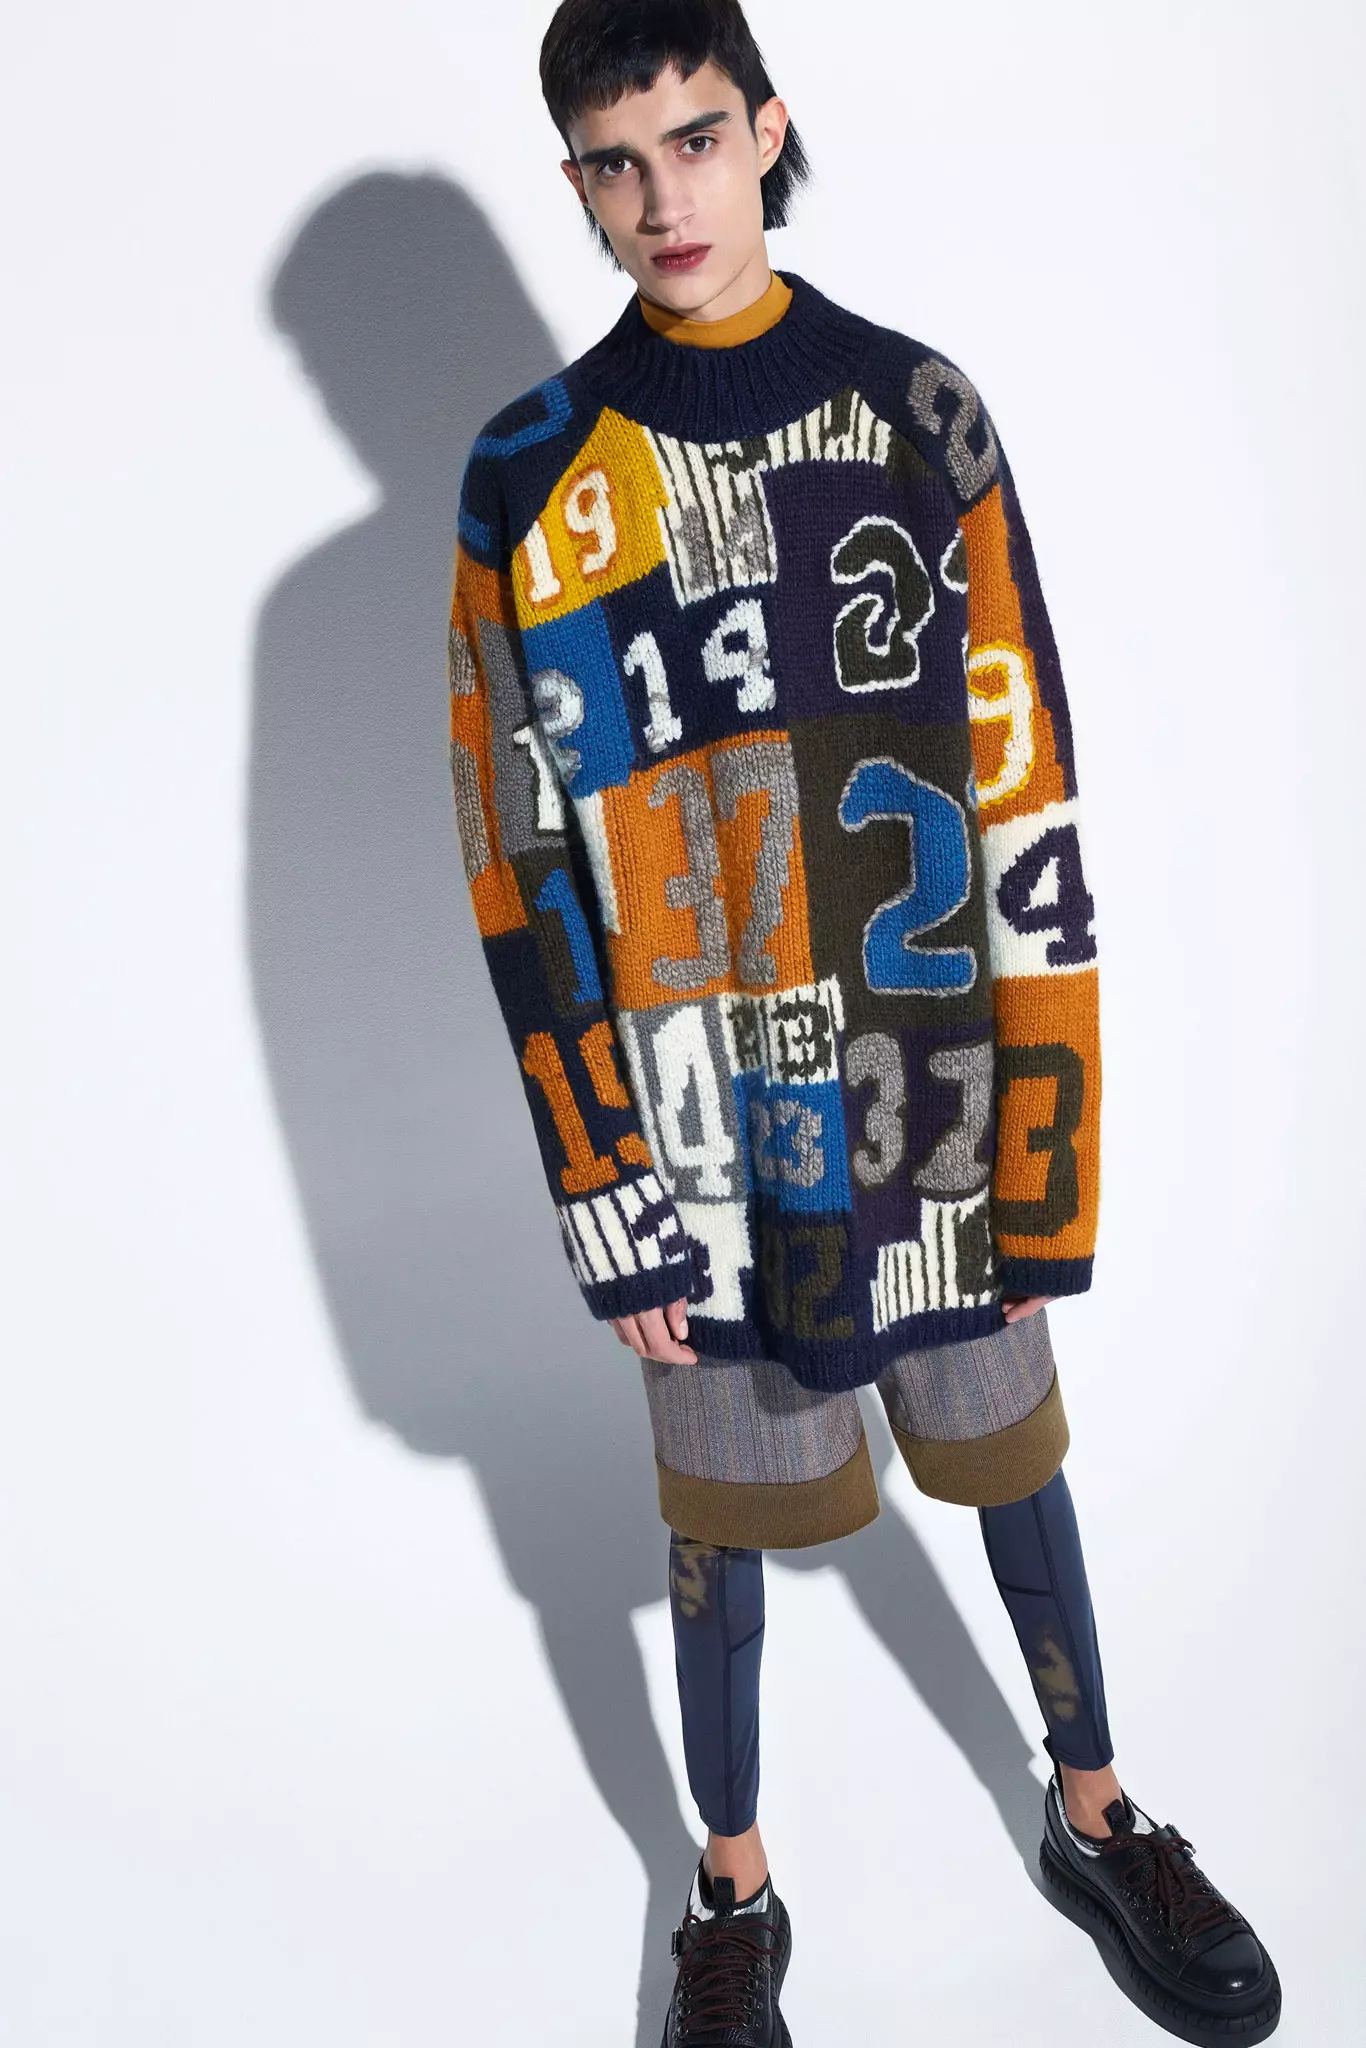 隆重推出 Acne Studios 2015 秋冬男装系列。 “这个想法是给男人什么让他们感到舒适和安全。英式剪裁、驴夹克、足球。然后是运动紧身裤的新轮廓：我想探索什么是阳刚之气，并符合我们所理解的男士风格。” – 创意总监 Jonny Johansson 查看完整系列图片：http://bit.ly/acnestudios-collections